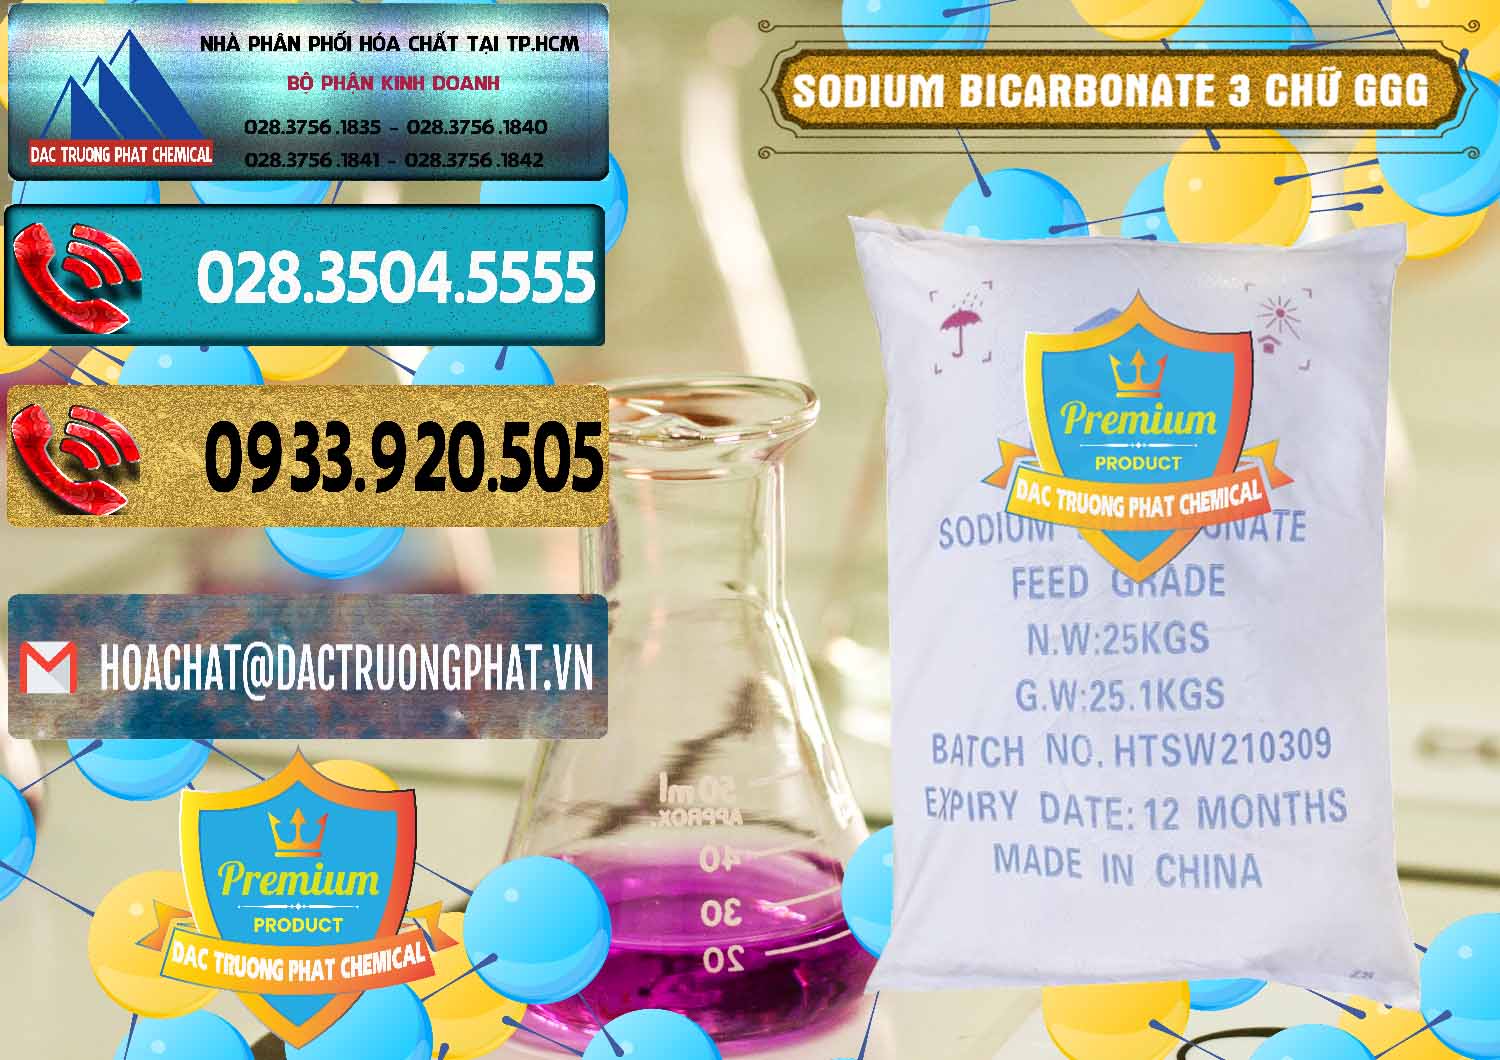 Đơn vị chuyên bán _ phân phối Sodium Bicarbonate – Bicar NaHCO3 Food Grade 3 Chữ GGG Trung Quốc China - 0259 - Đơn vị cung cấp và phân phối hóa chất tại TP.HCM - hoachatdetnhuom.com